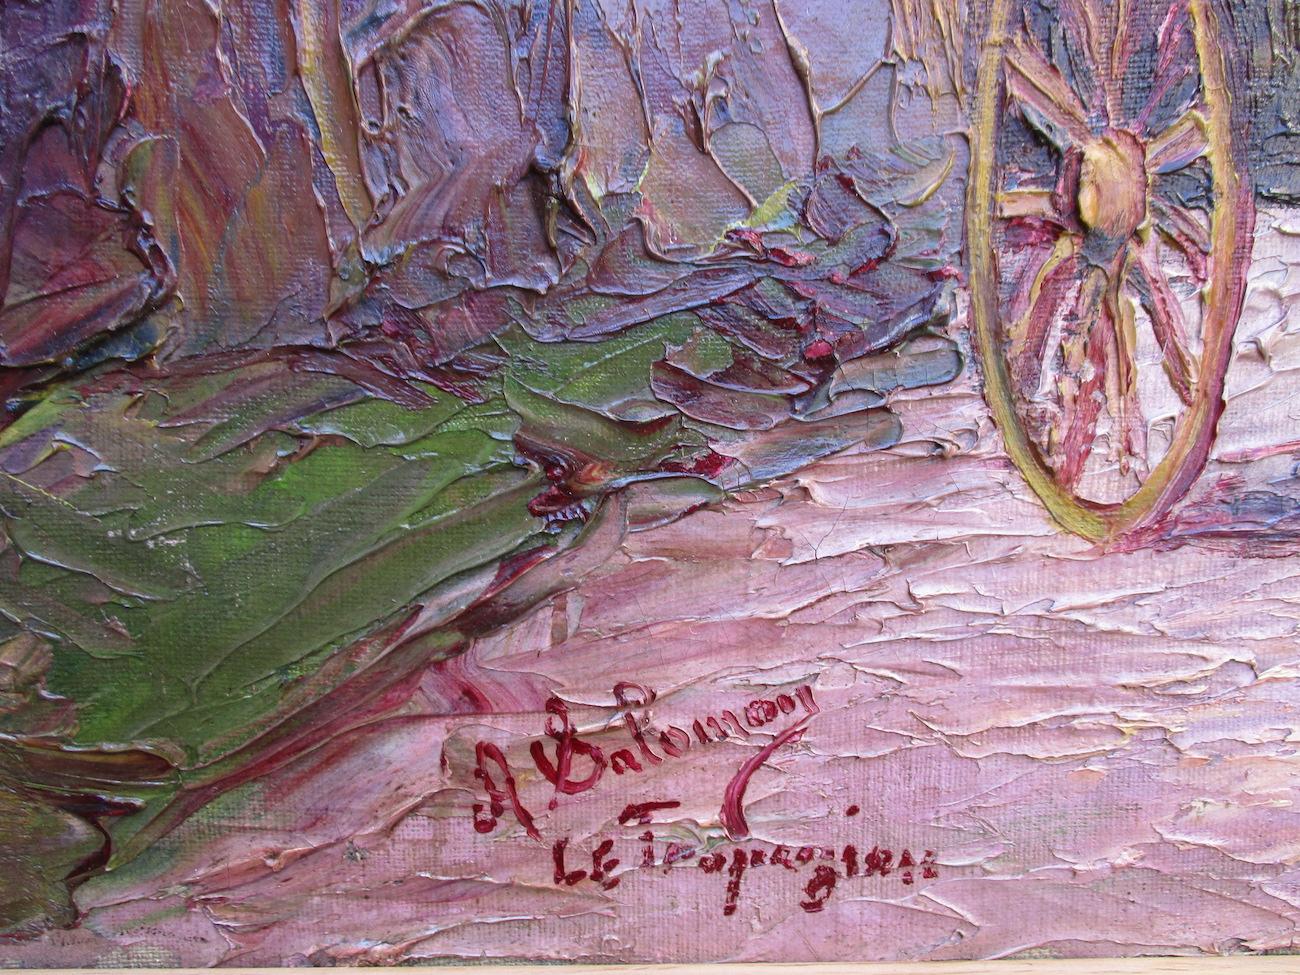 Haymaking near Saint Tropez  - Painting by André Salomon Le Tropezien